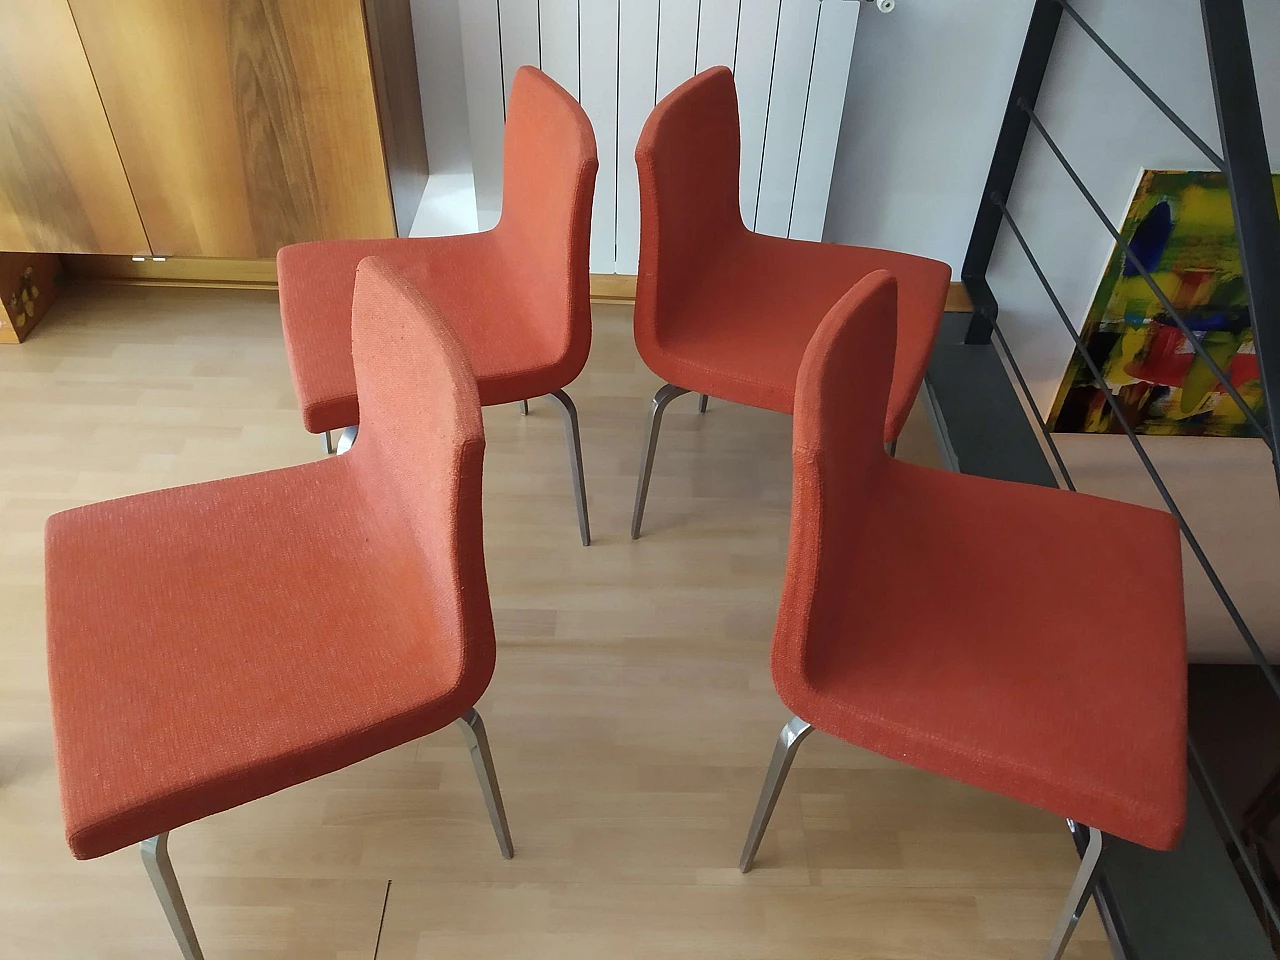 4 Hella Chairs by Mauro Lipparini for MisuraEmme 1477204